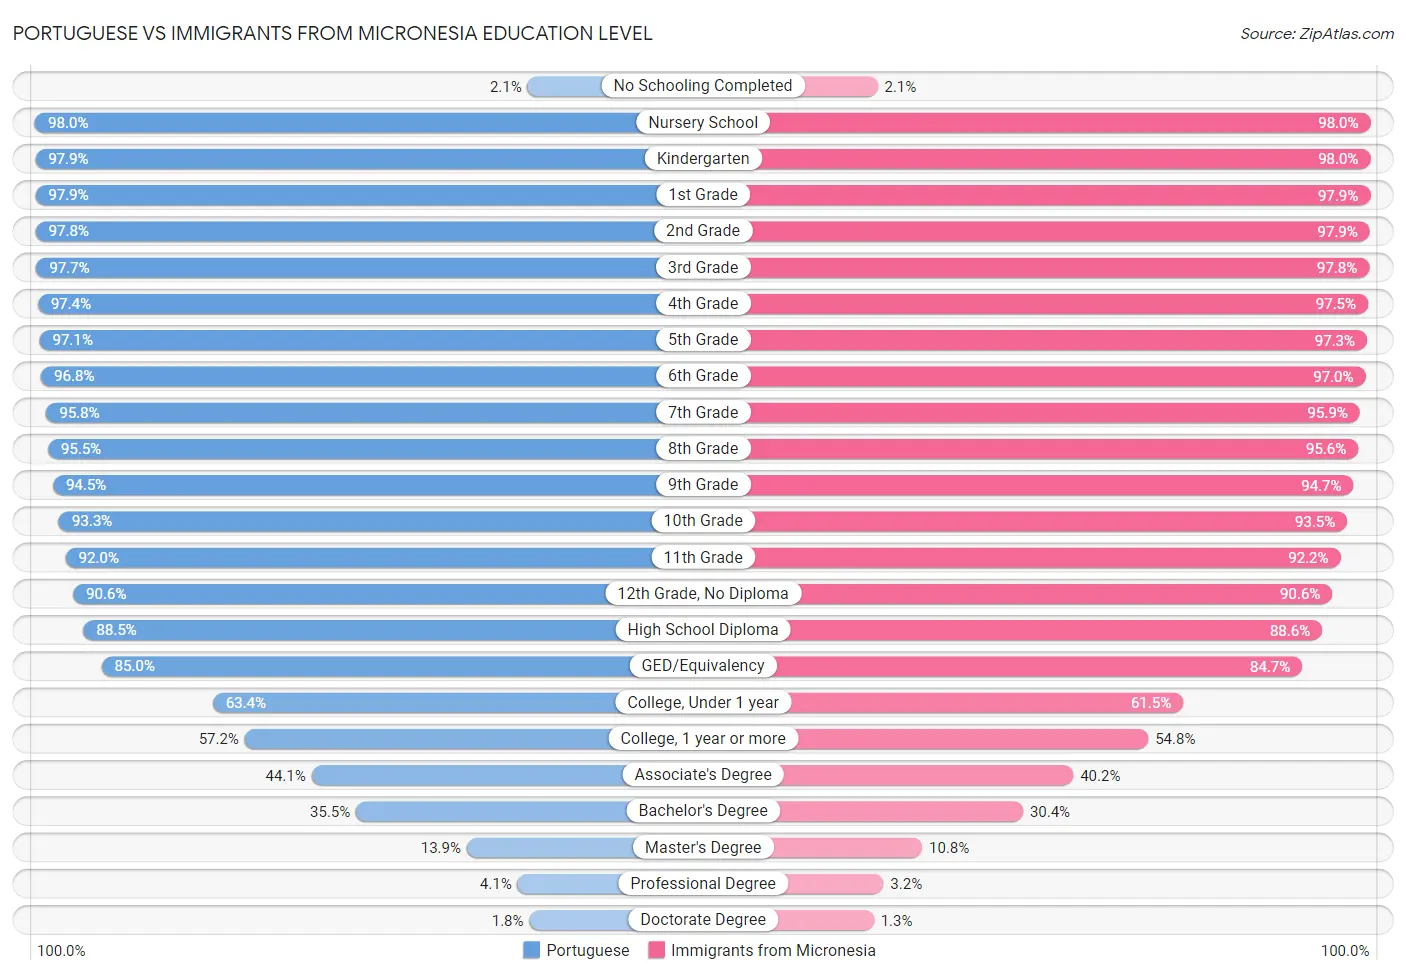 Portuguese vs Immigrants from Micronesia Education Level